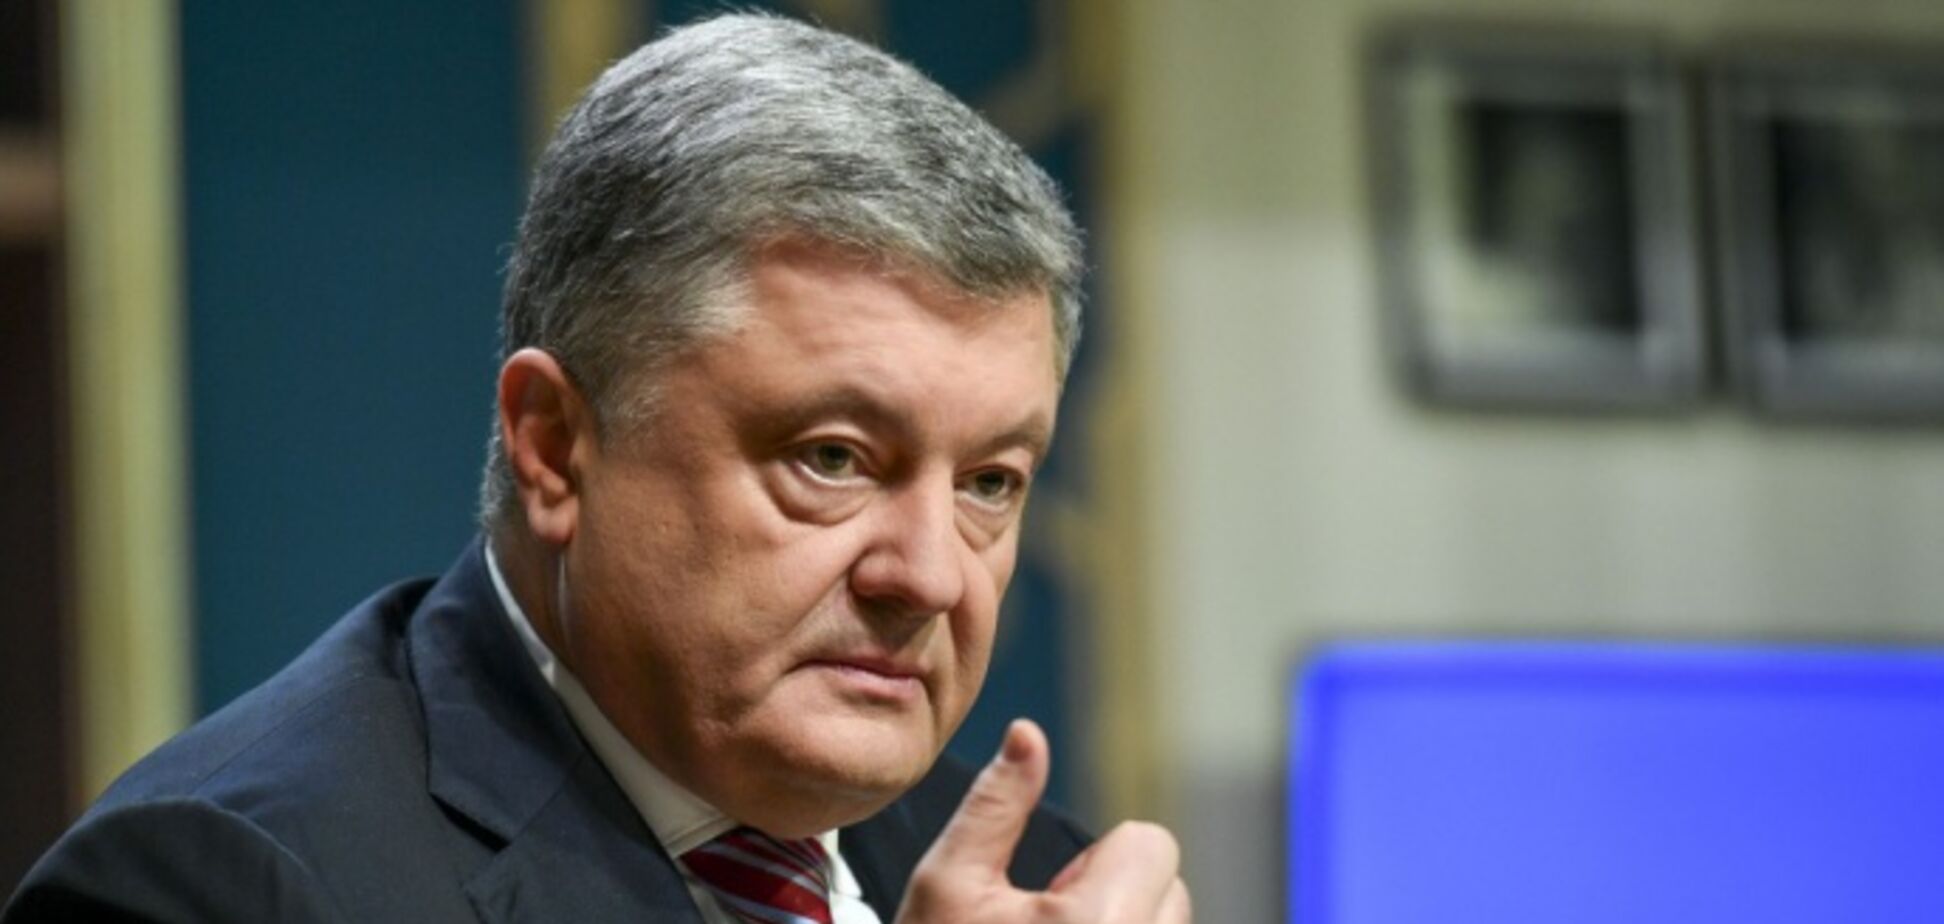 Порошенко объявил хорошую новость о банковской системе Украины